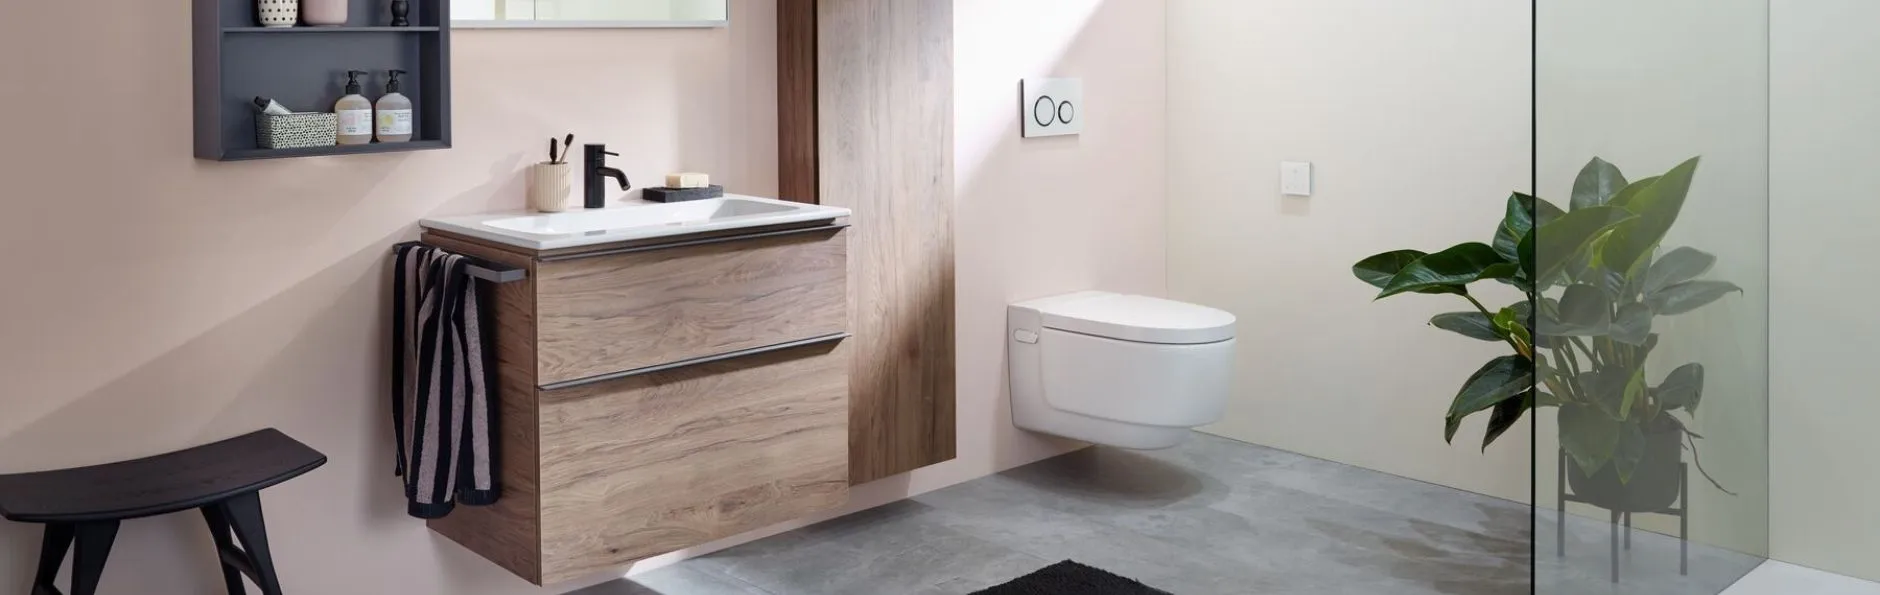 Een japans toilet van Well-Fair met bijbehoren in een badkamer